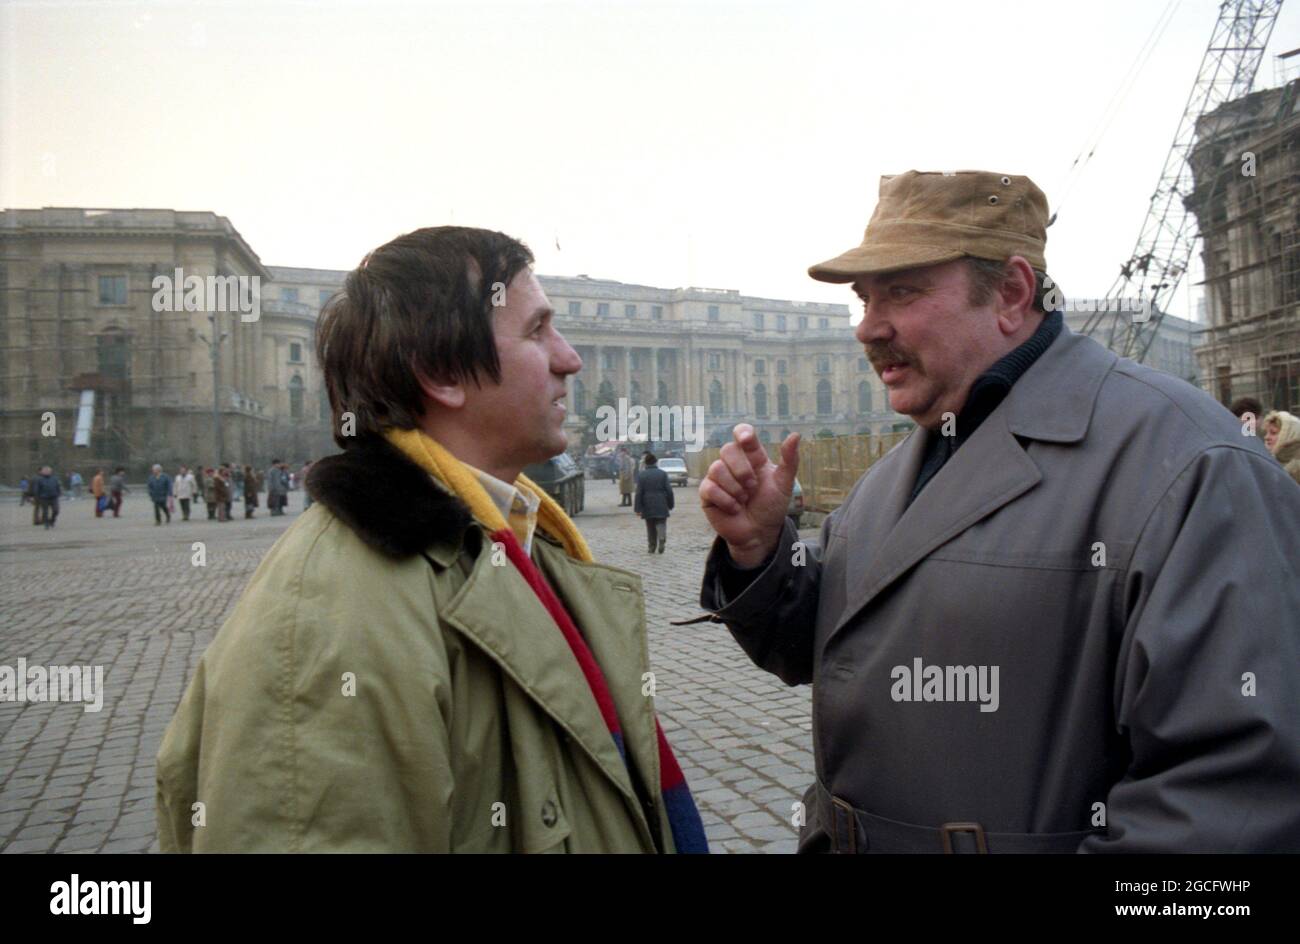 Centro di Bucarest, Romania, 1990 febbraio. Attori George Mihaita e George Constantin che hanno una conversazione per strada nel periodo oscuro subito dopo la caduta del comunismo. Foto Stock